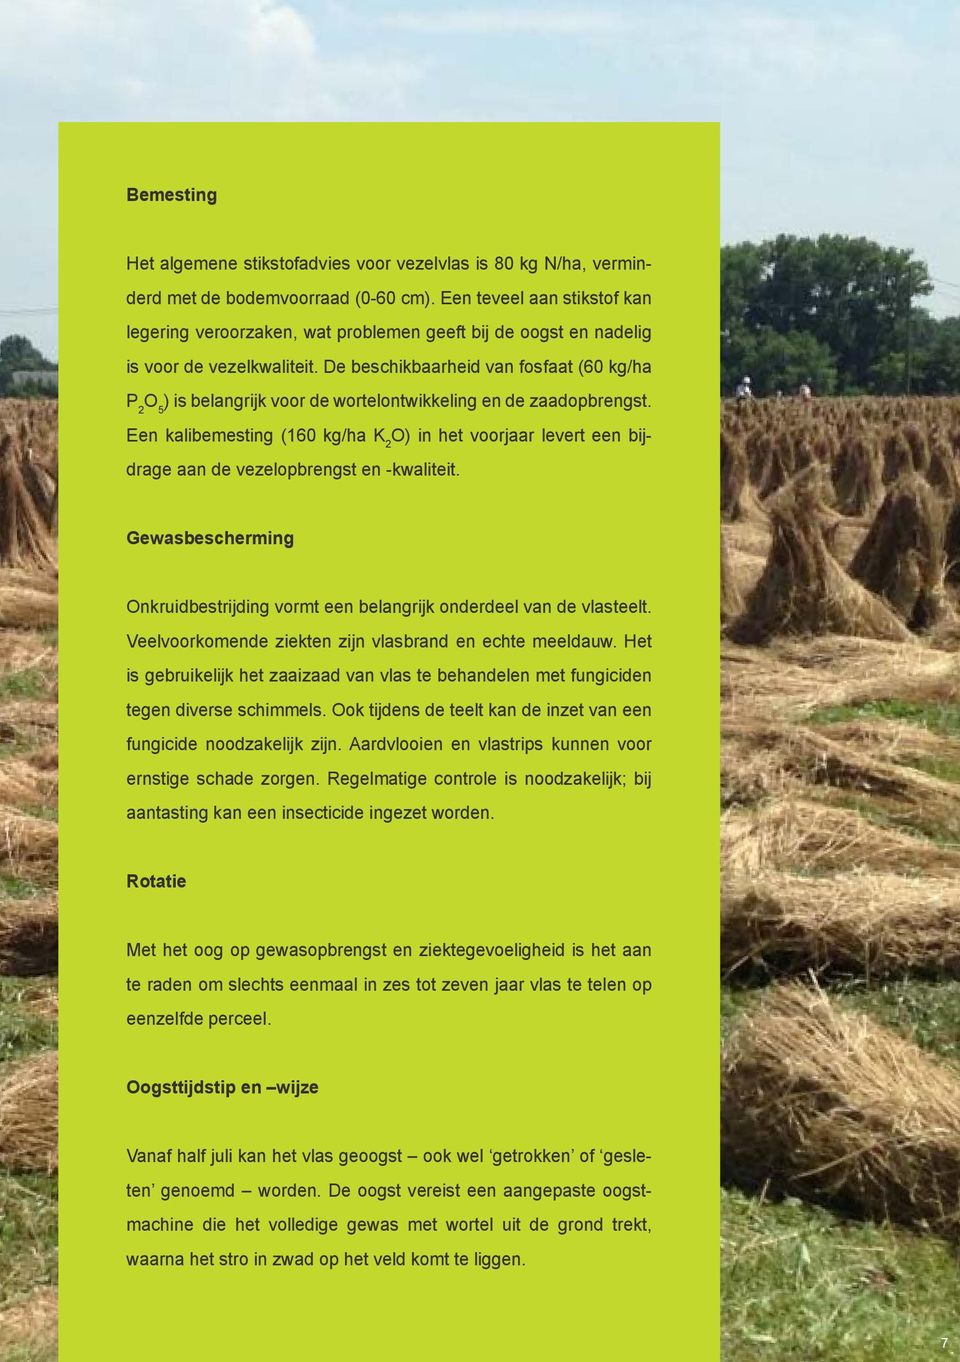 De beschikbaarheid van fosfaat (60 kg/ha P 2 O 5 ) is belangrijk voor de wortelontwikkeling en de zaadopbrengst.